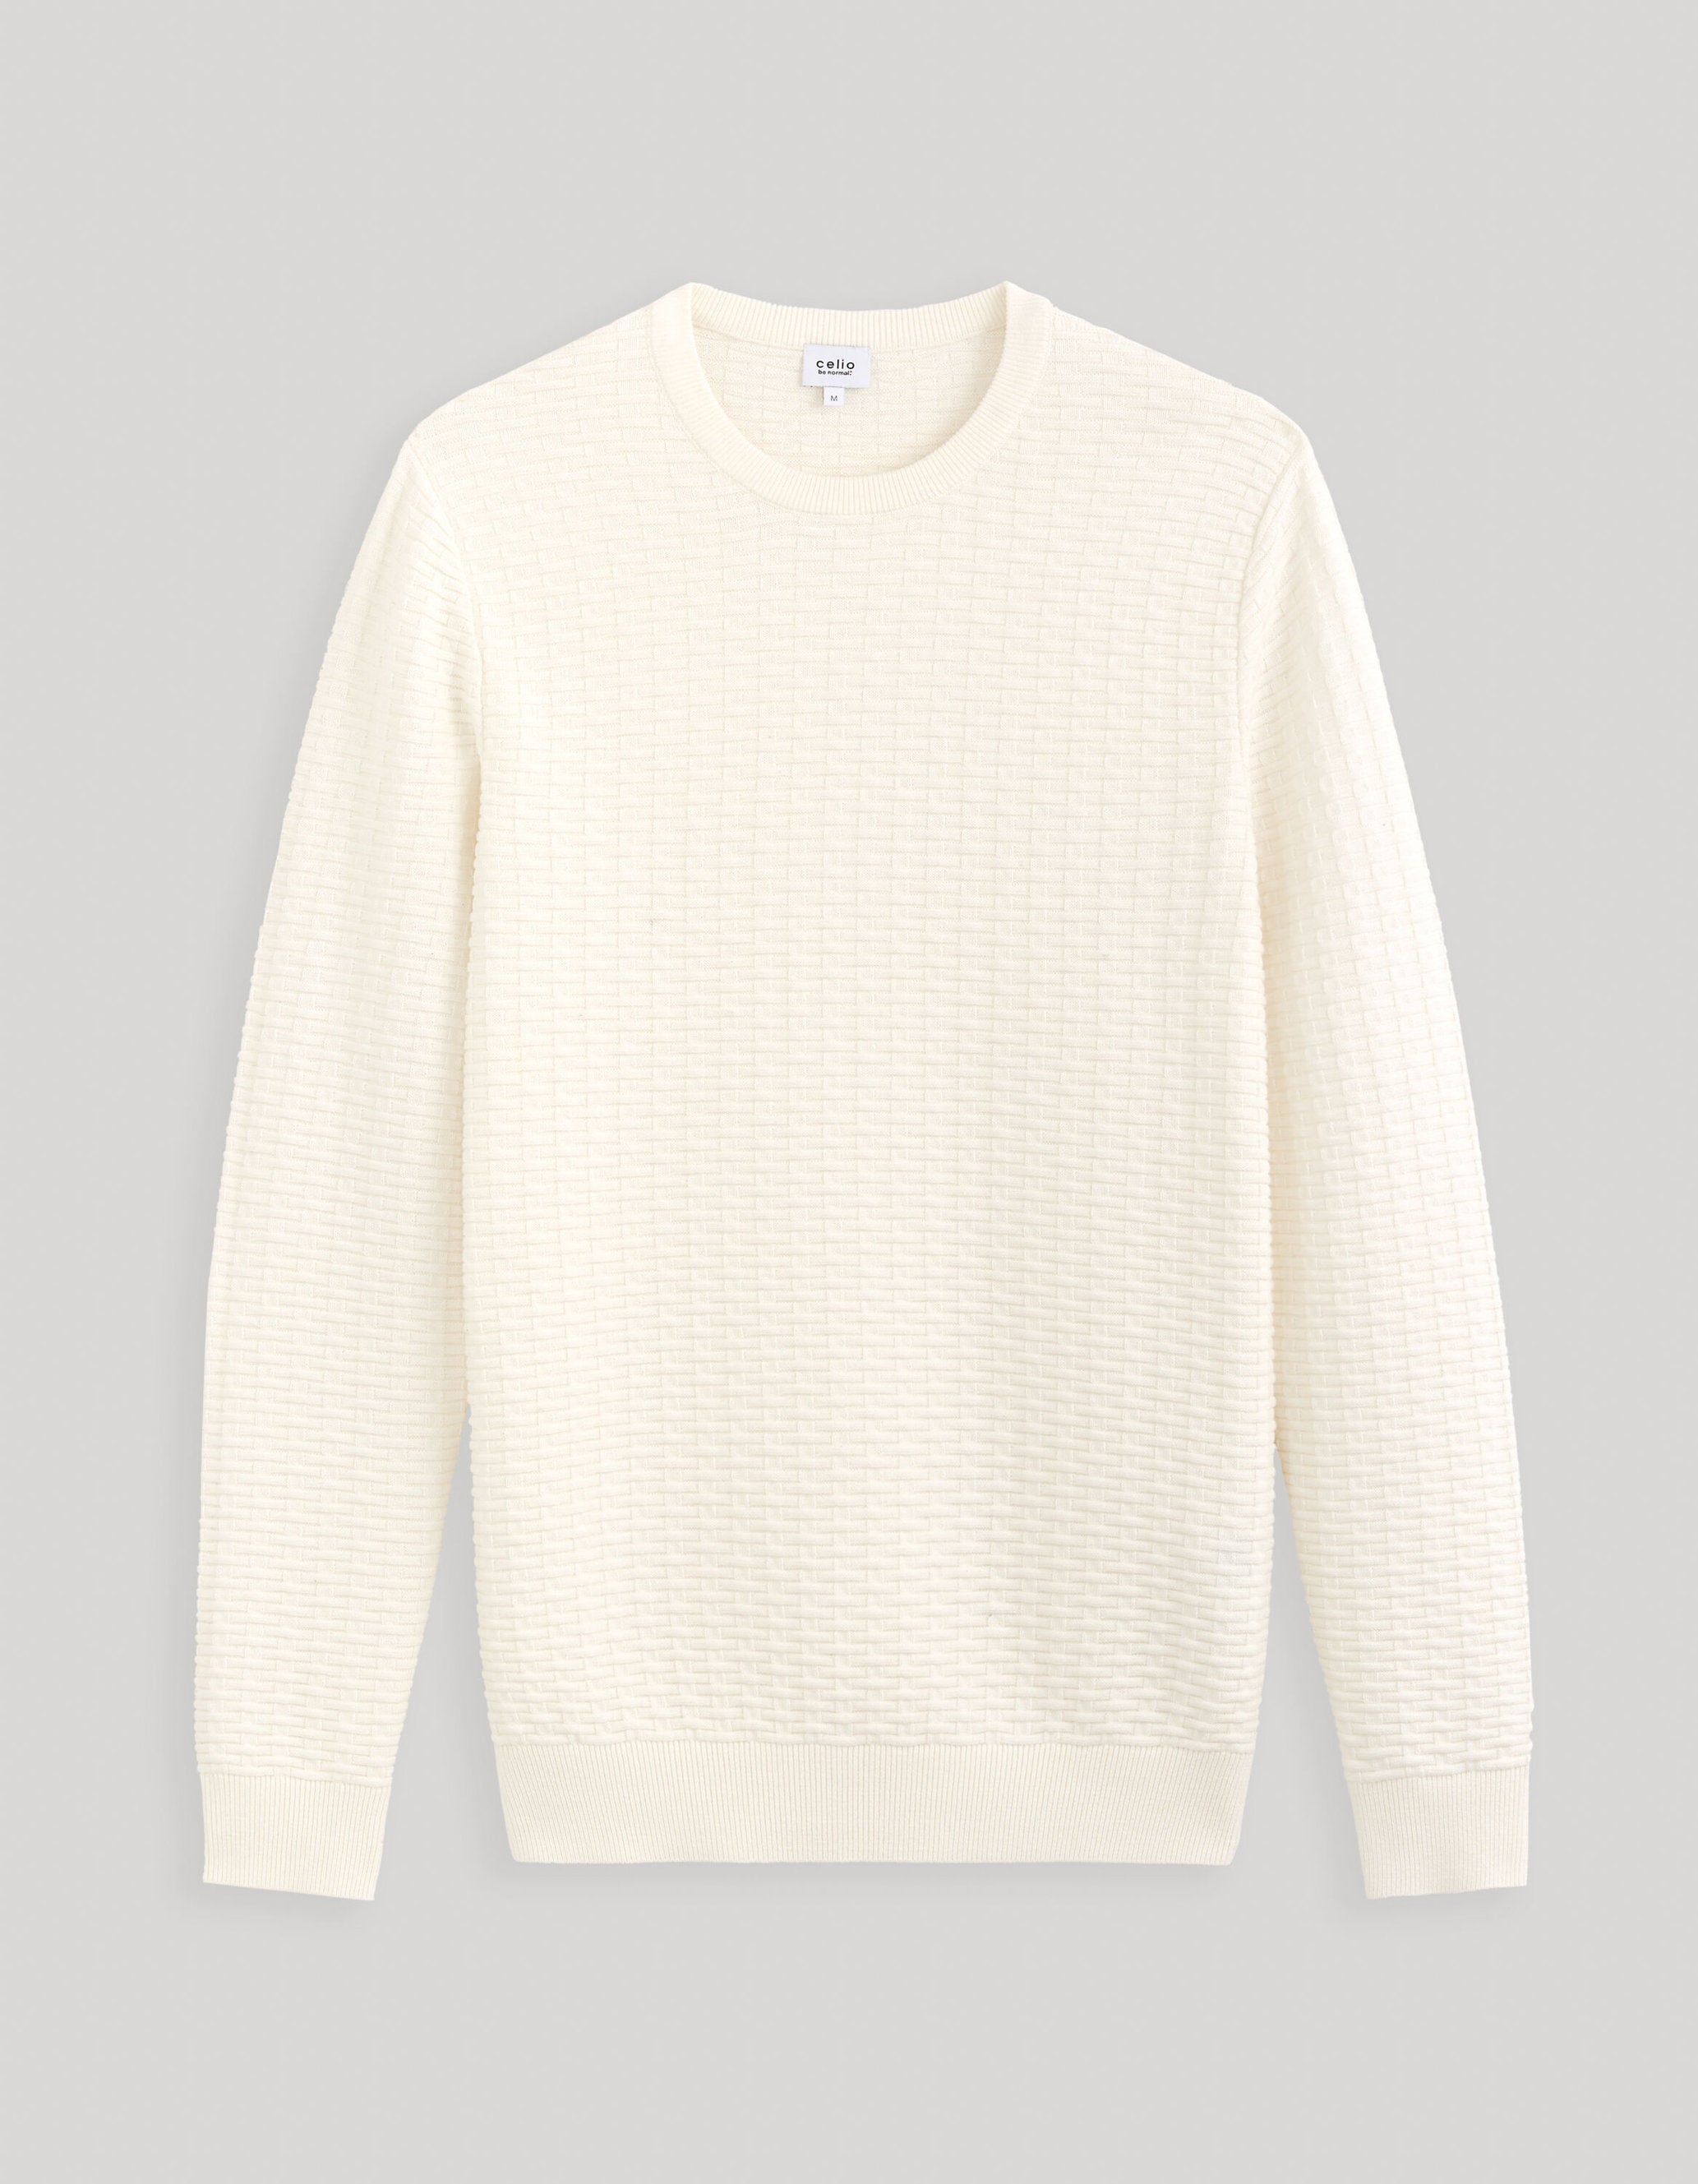 Round Neck Sweater 100% Cotton_FEWALL_ECRU_02